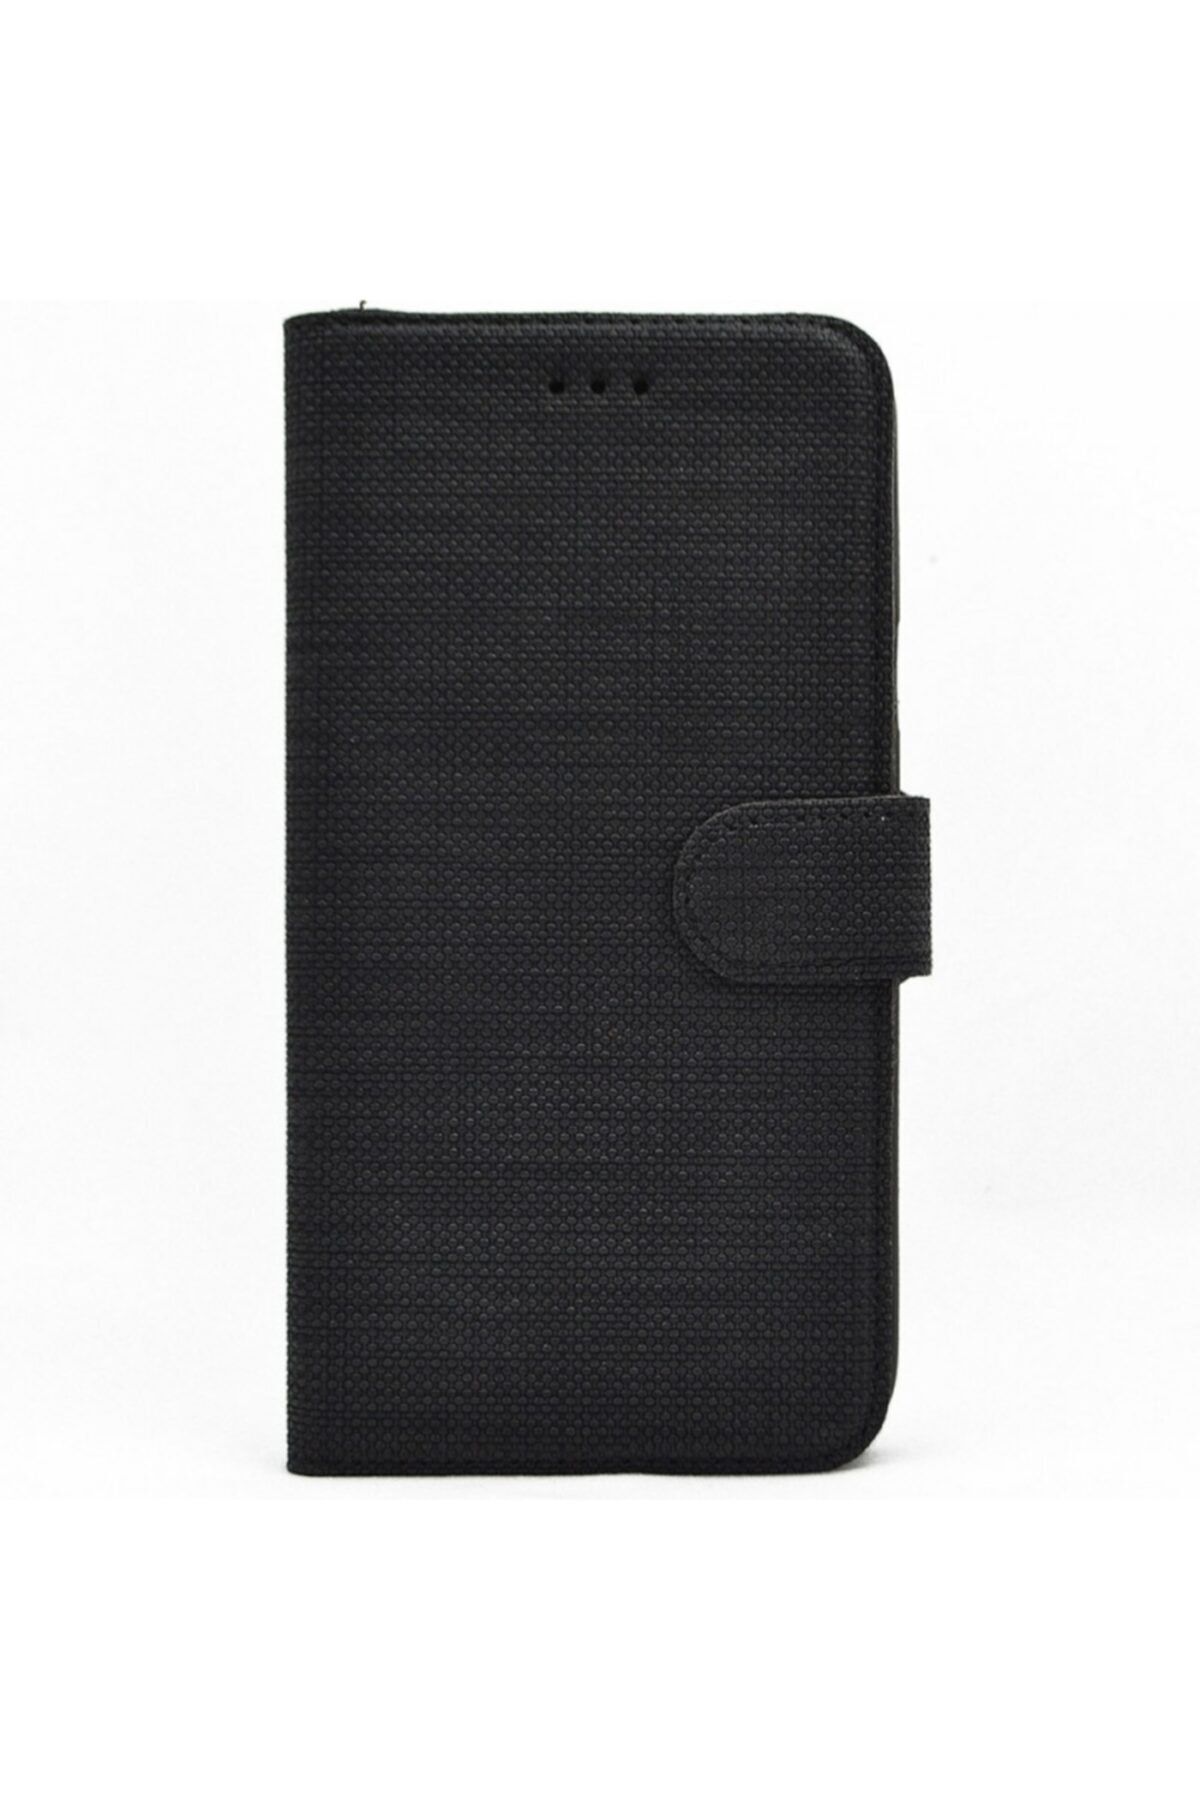 Samsung Nihcase Galaxy A31 Kılıf Kumaş Spor Standlı Cüzdan Siyah